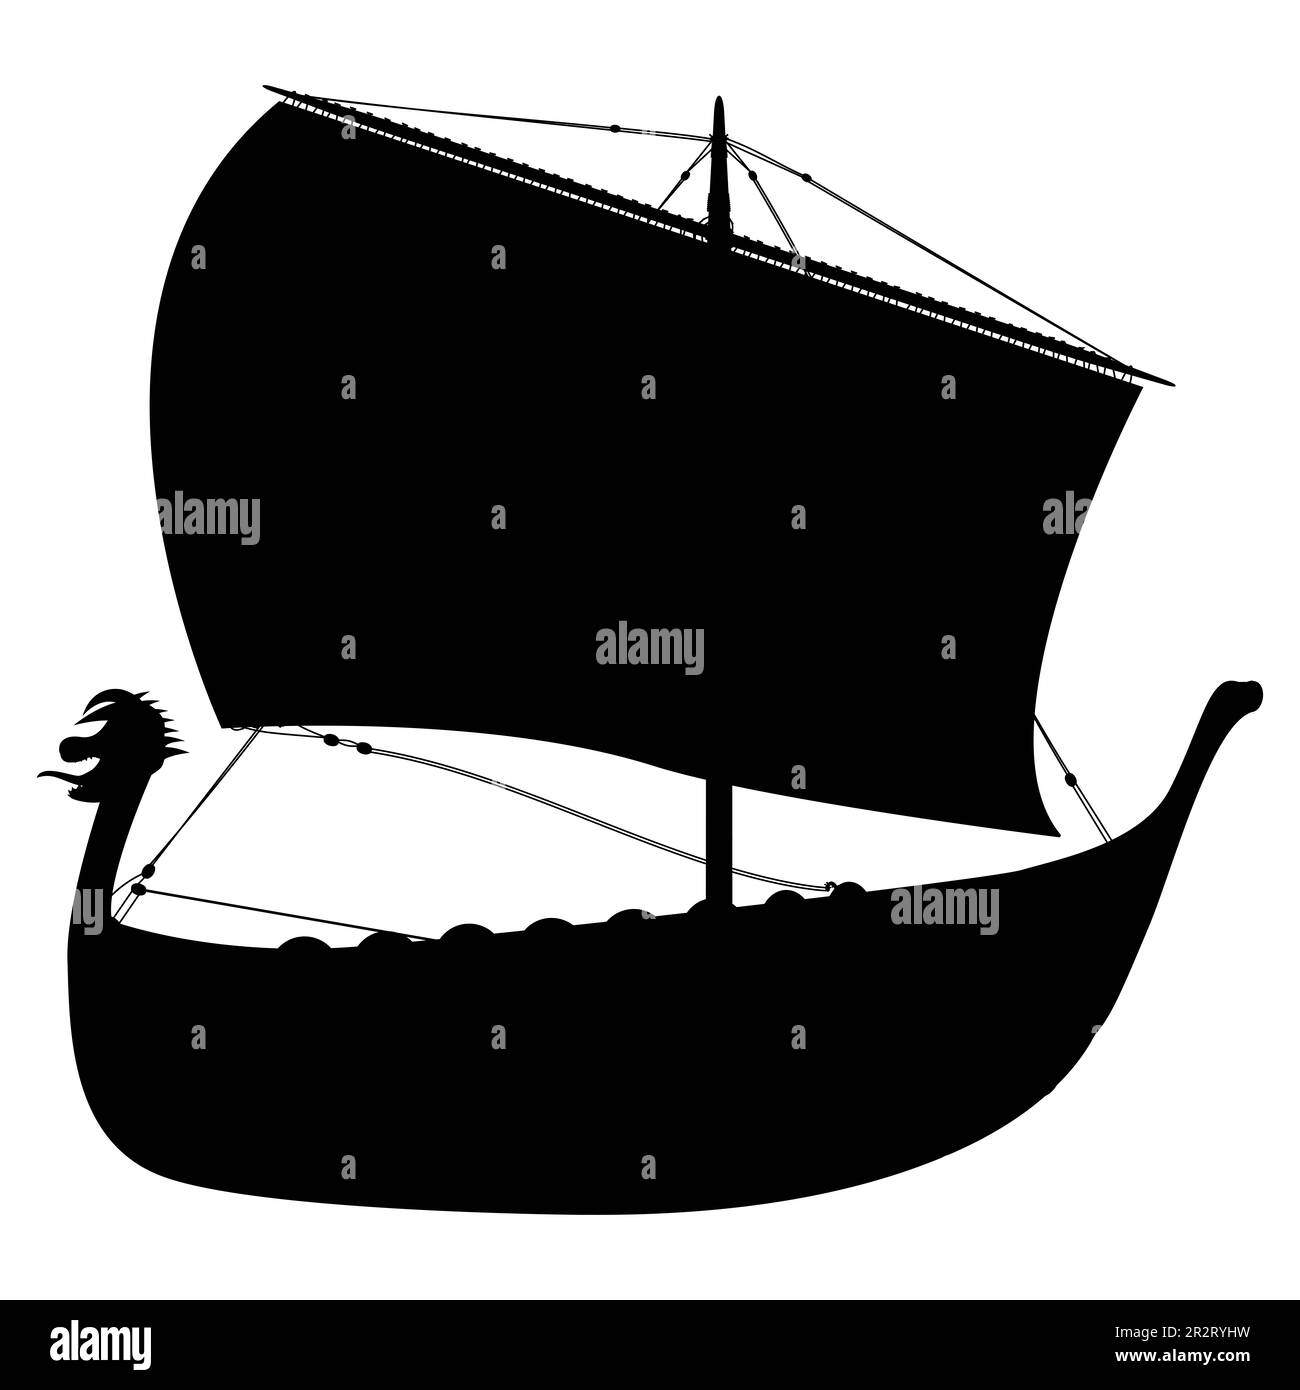 Silhouette drakkar scandinave viking. Navire Norman voile. Illustration isolée sur fond blanc. Banque D'Images